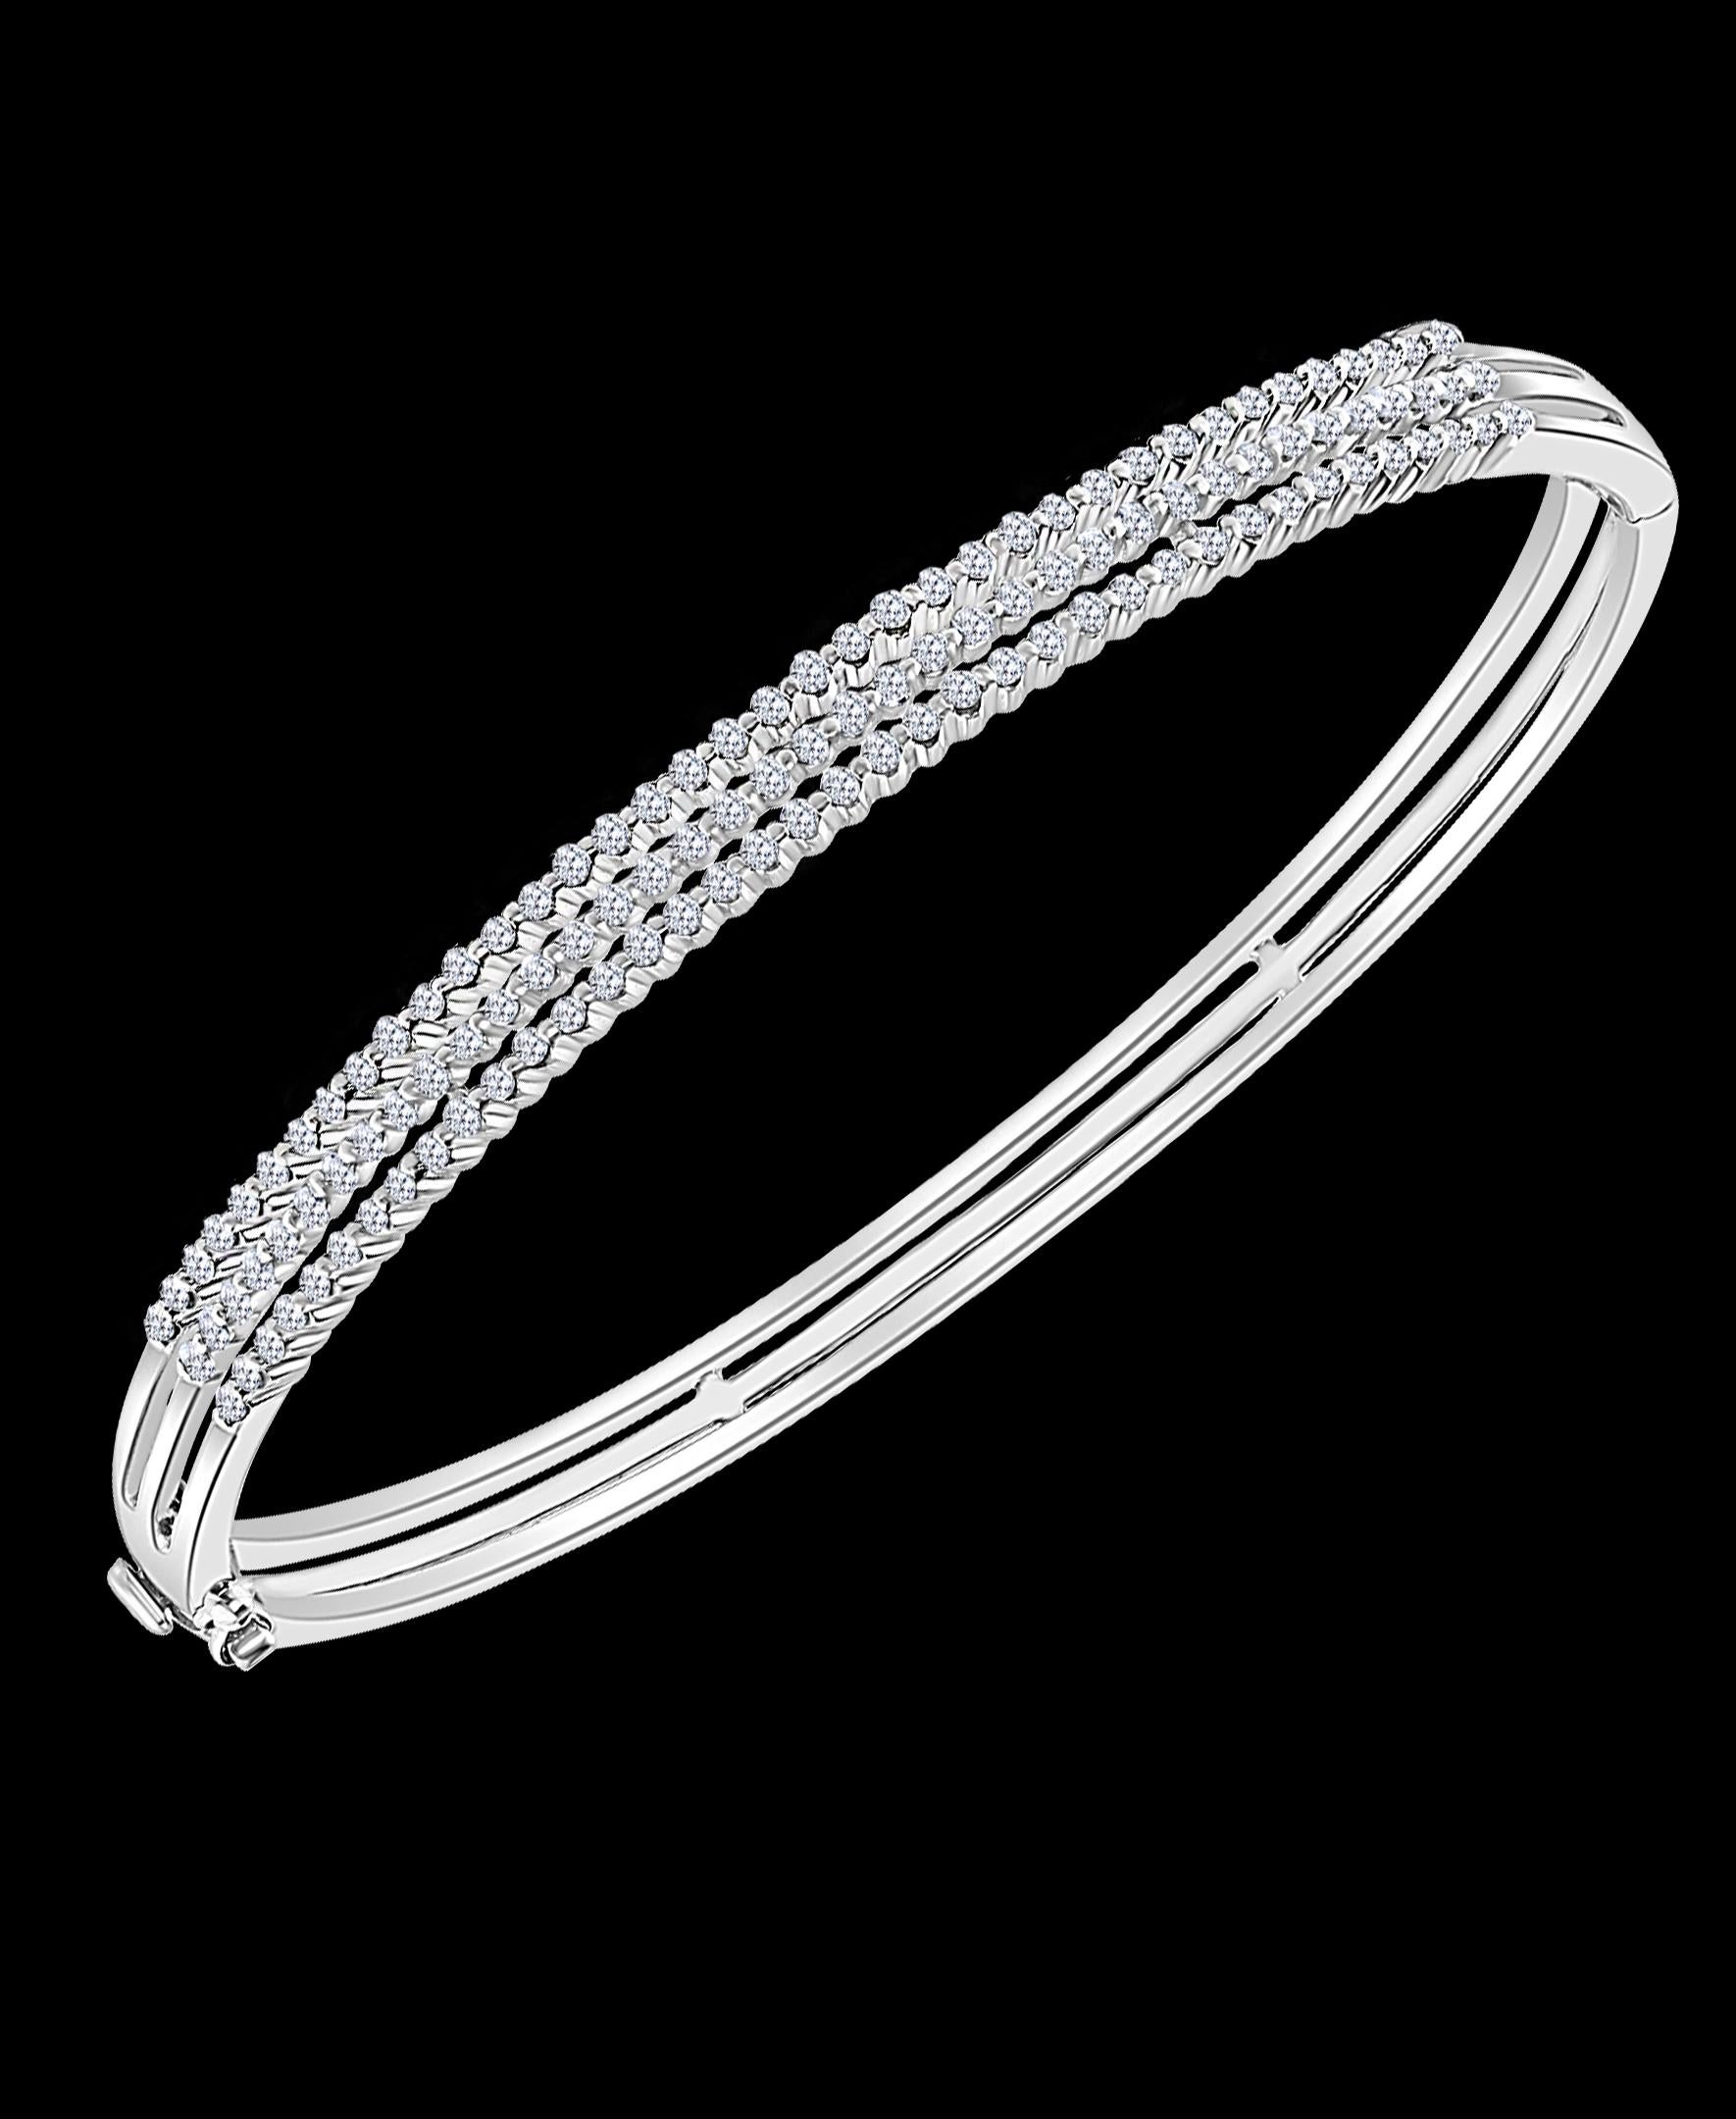 1.bracelet avec diamant de 3 carats en or blanc 18 carats 15 grammes
Il s'agit d'un bracelet de style bangle en or blanc 18 carats, serti de diamants ronds et brillants d'une valeur totale d'environ 1,3 carat. 
Trois rangs de diamants.
S'ouvre d'un